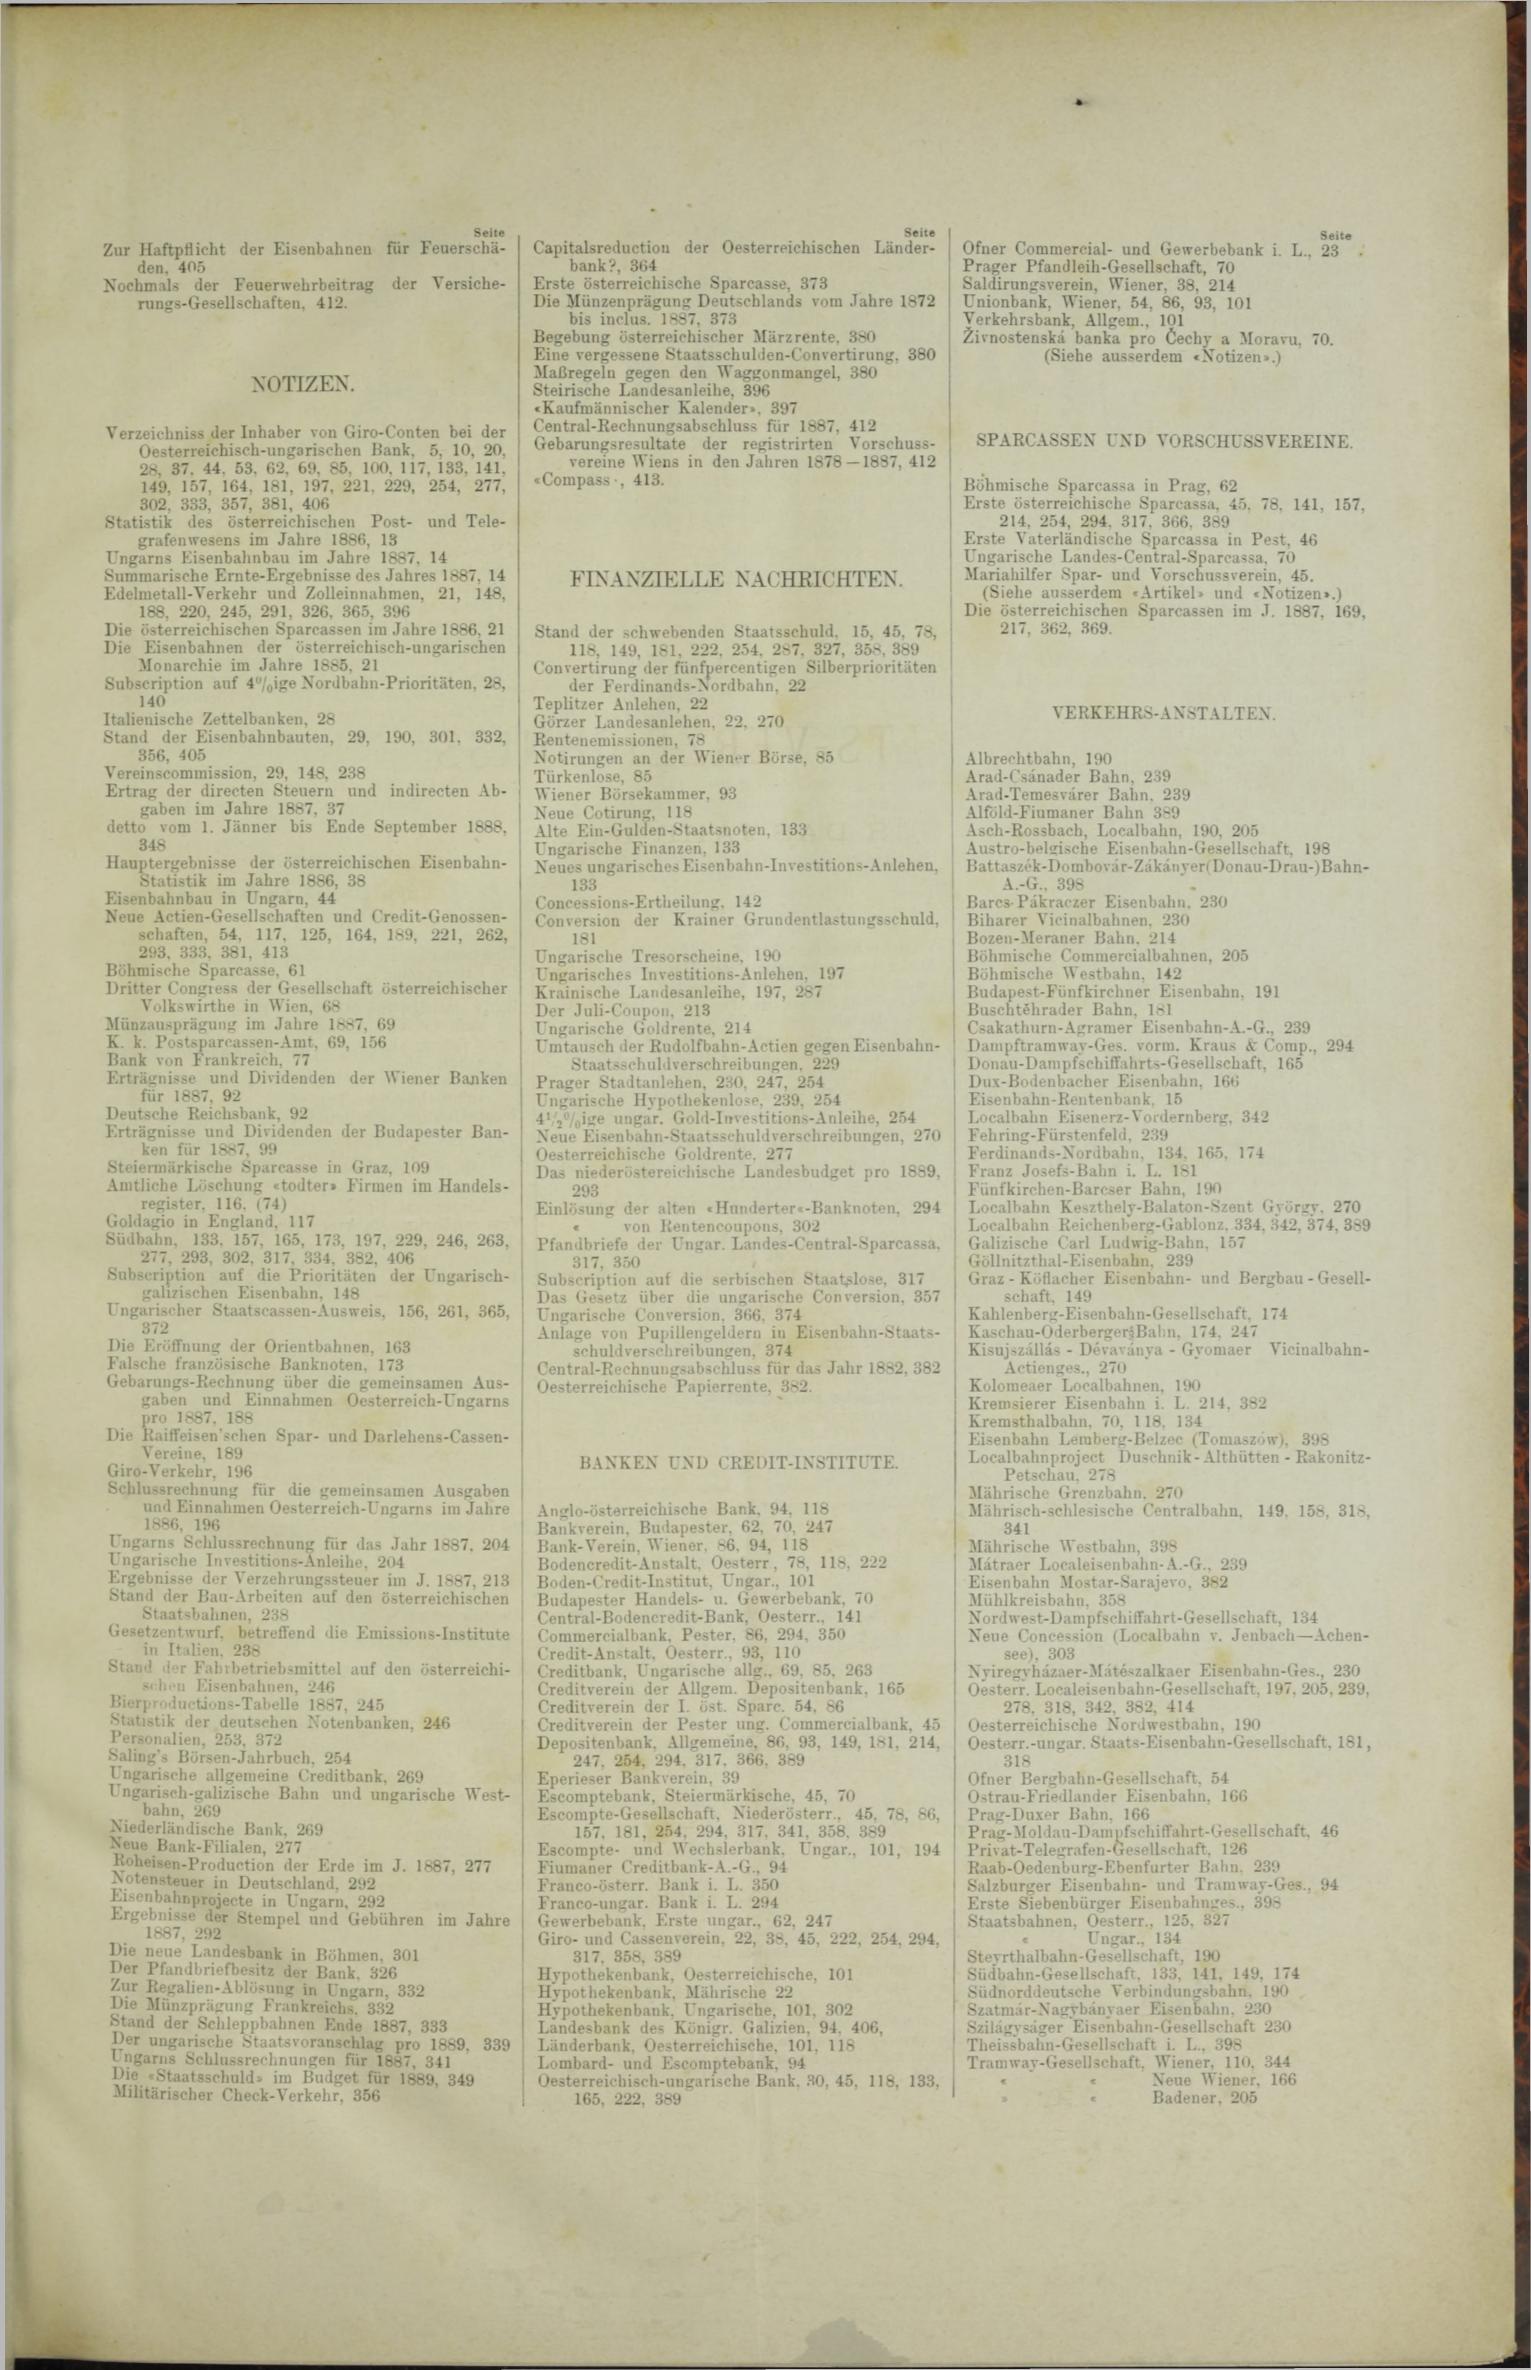 Der Tresor 18.10.1888 - Seite 11